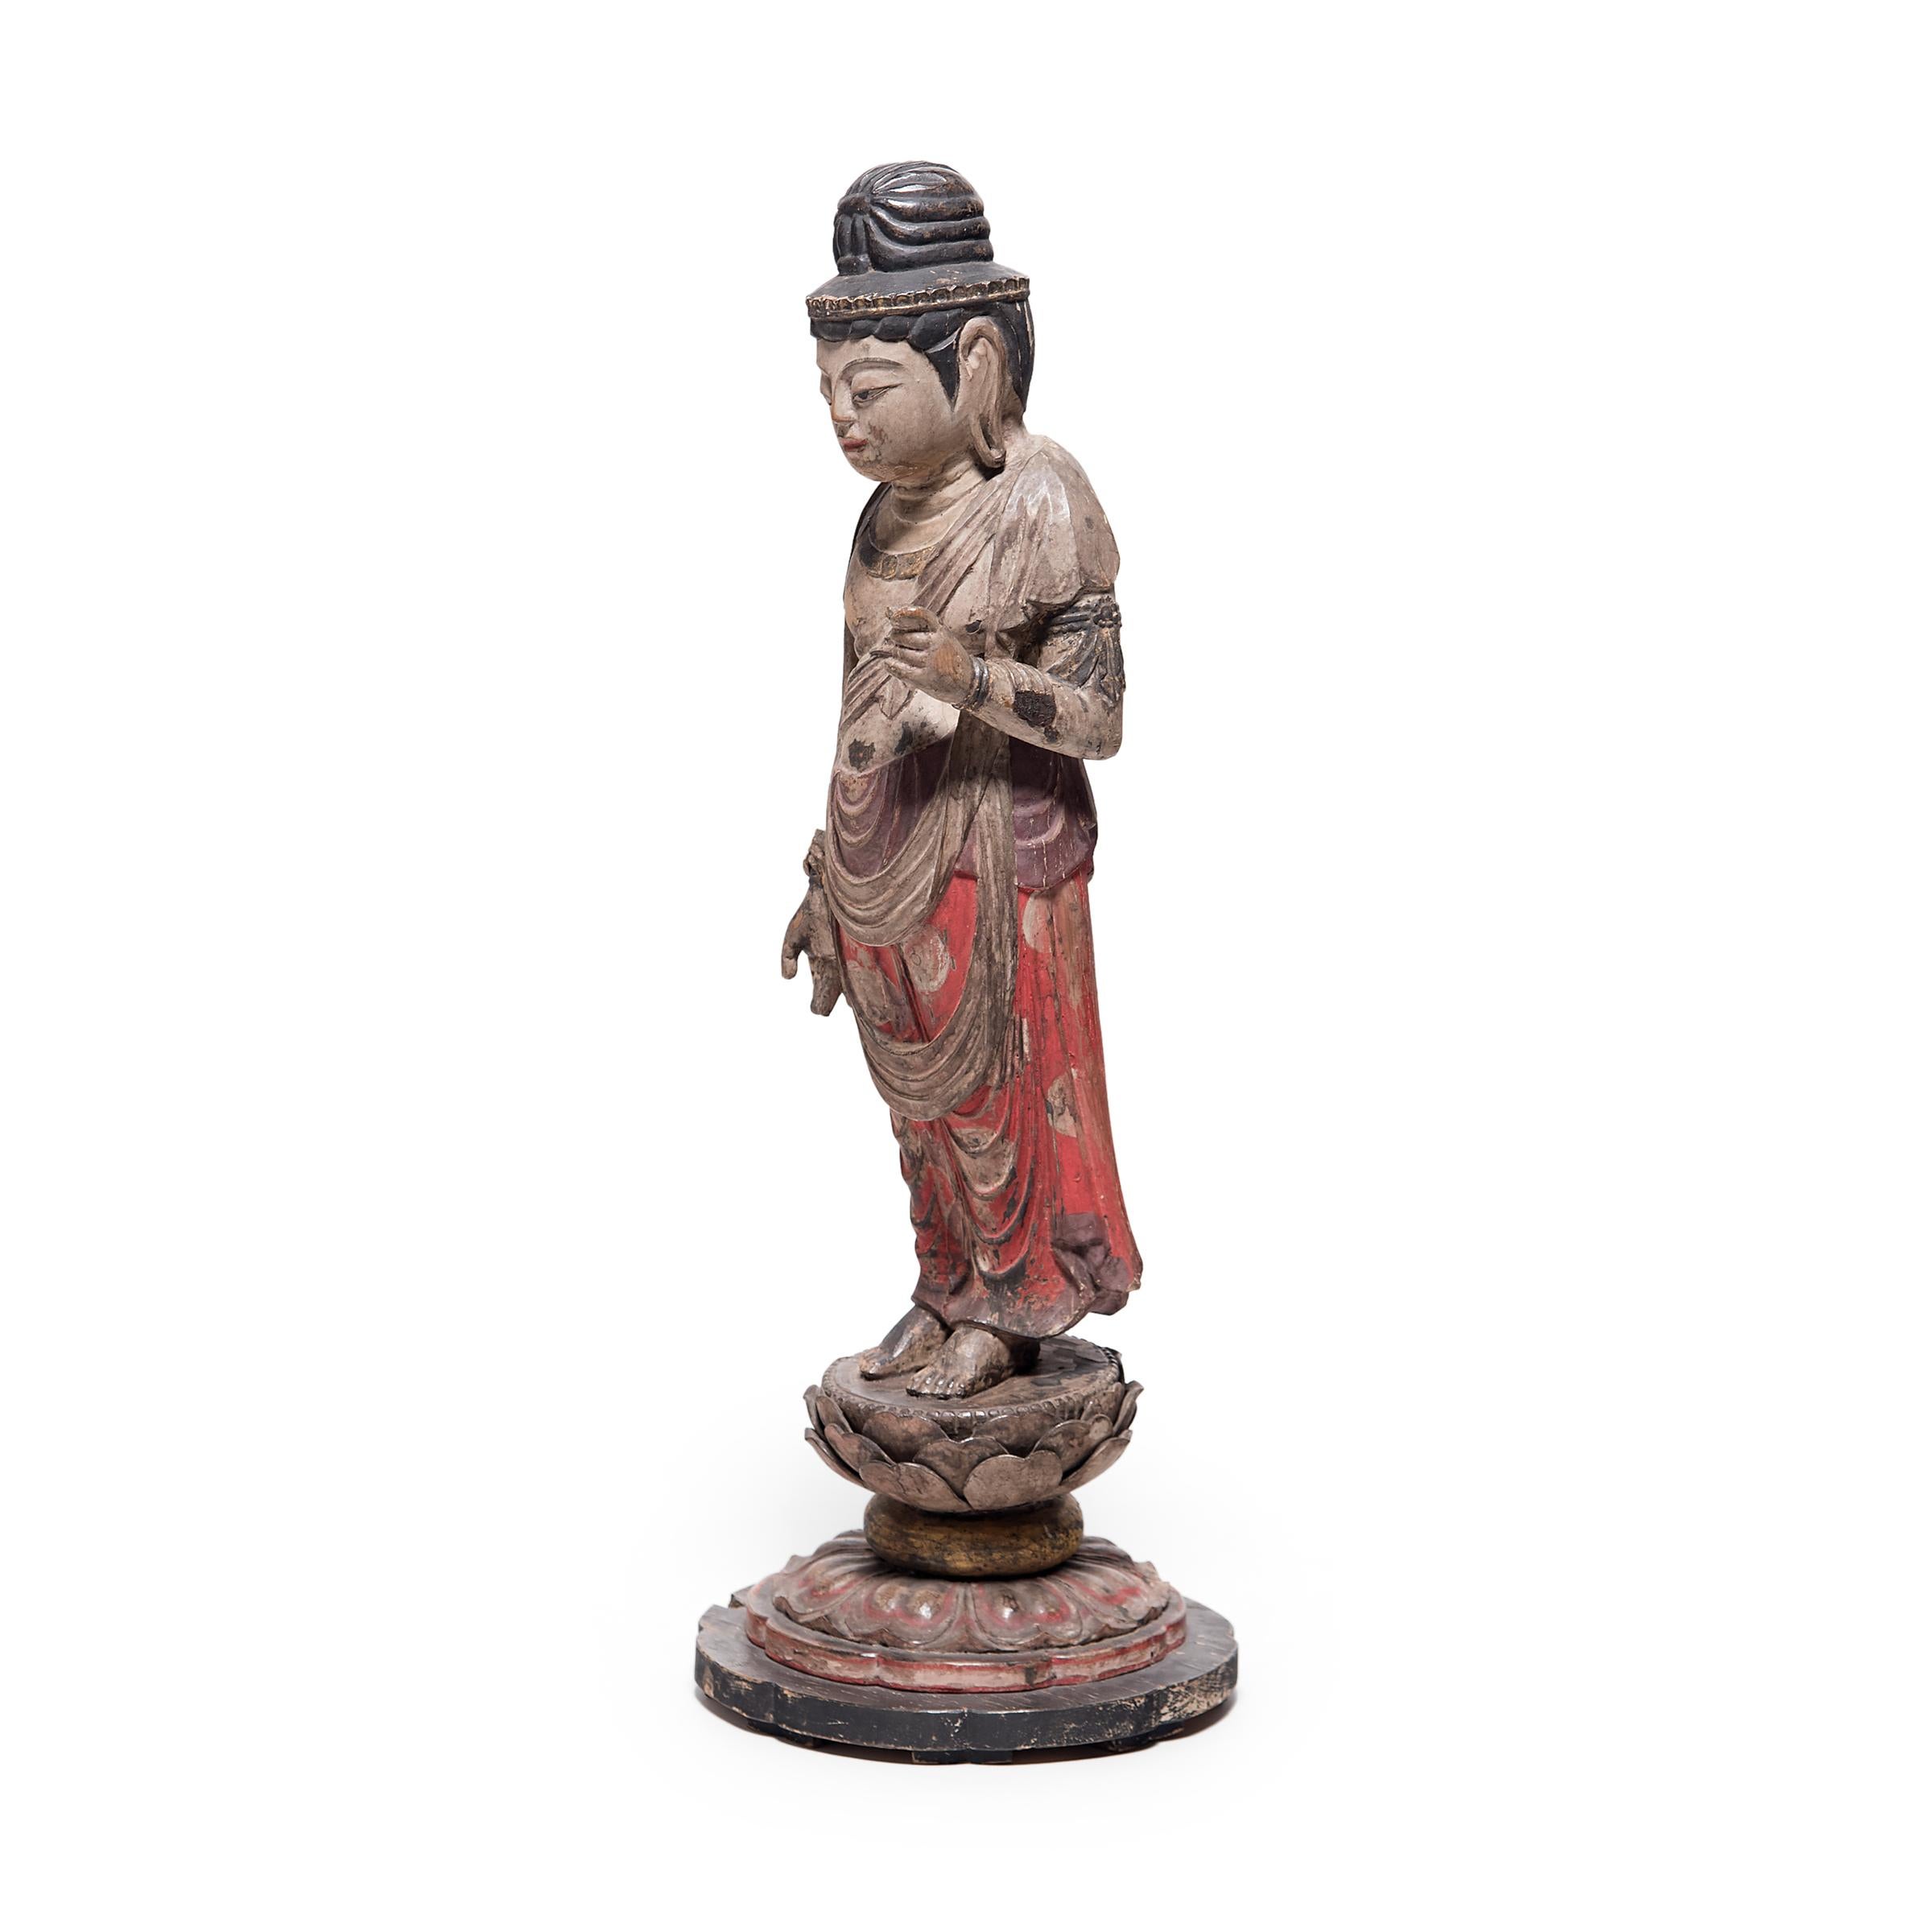 Diese stehende Figur aus dem späten 19. Jahrhundert stellt die heilige Form des Bodhisattva Guanyin dar, die im japanischen Buddhismus als Sho Kannon oder Guze Kannon bekannt ist. Beschrieben als der 